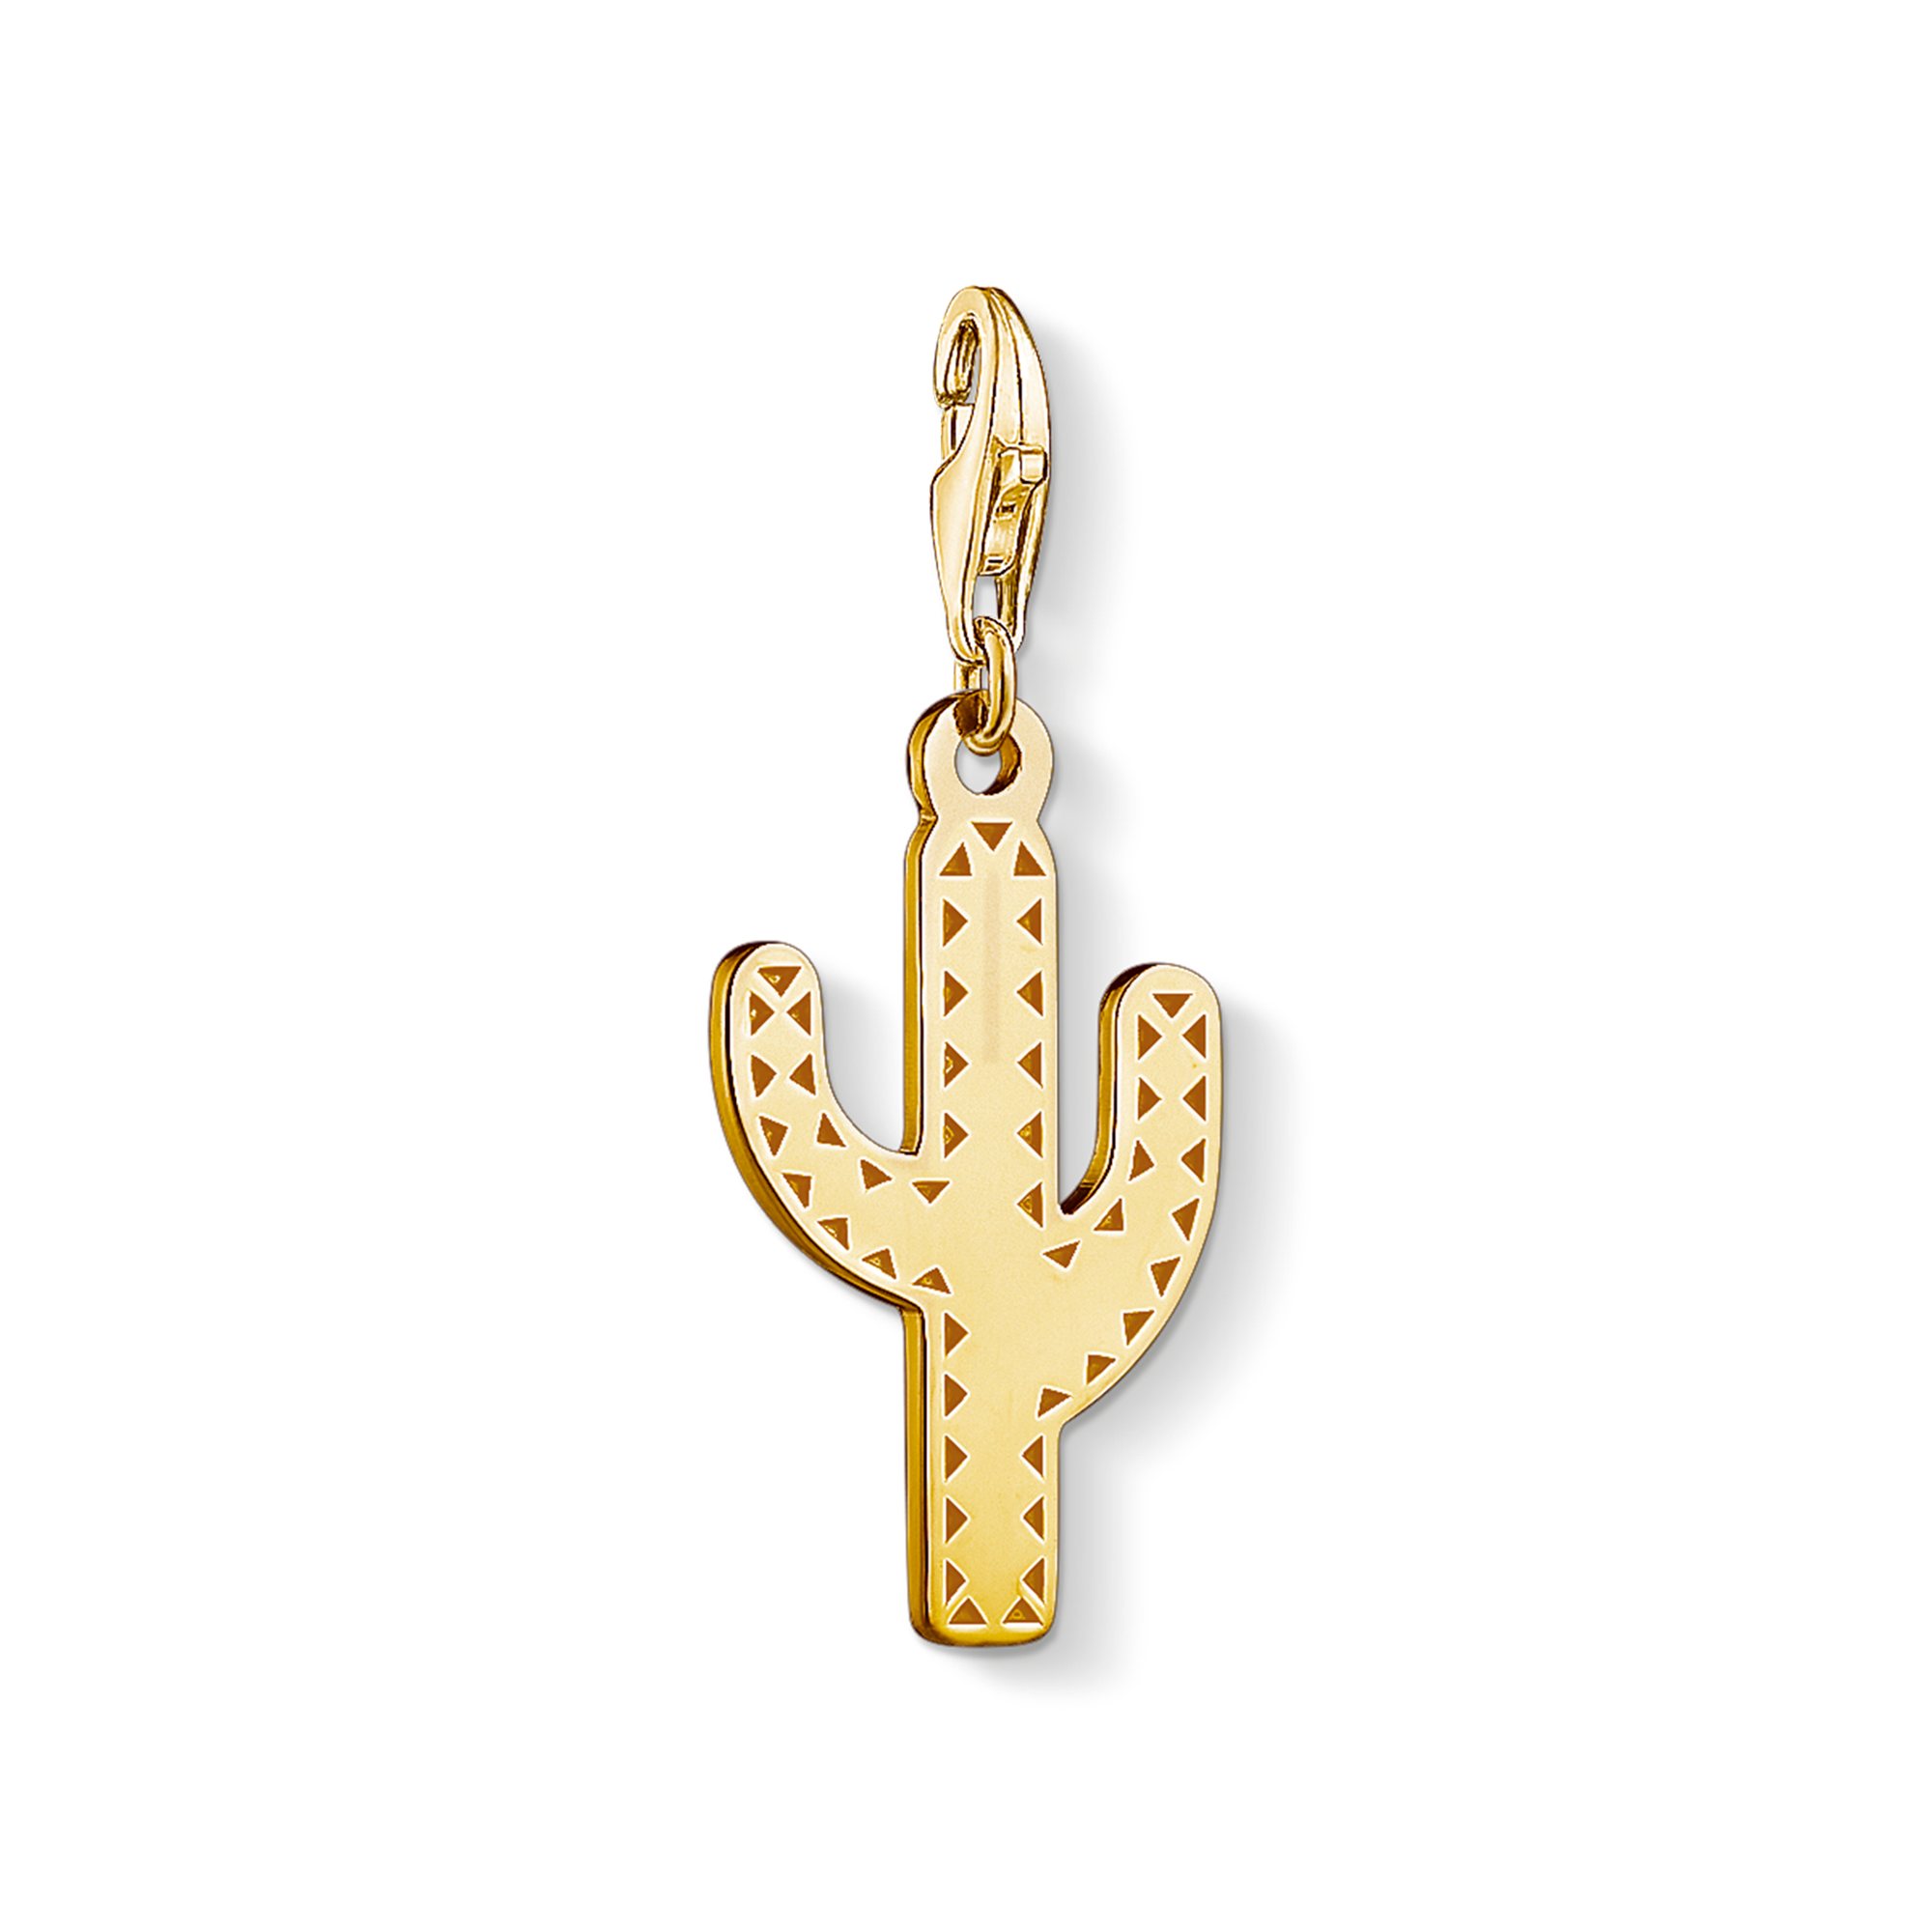 Vorsicht, stachelig: Der Kaktus-Charm ist der heimliche König der Wüste. Verziert mit coolen Ethno-Mustern, passt er perfekt zu trendigen Festival-Outfits. - 0